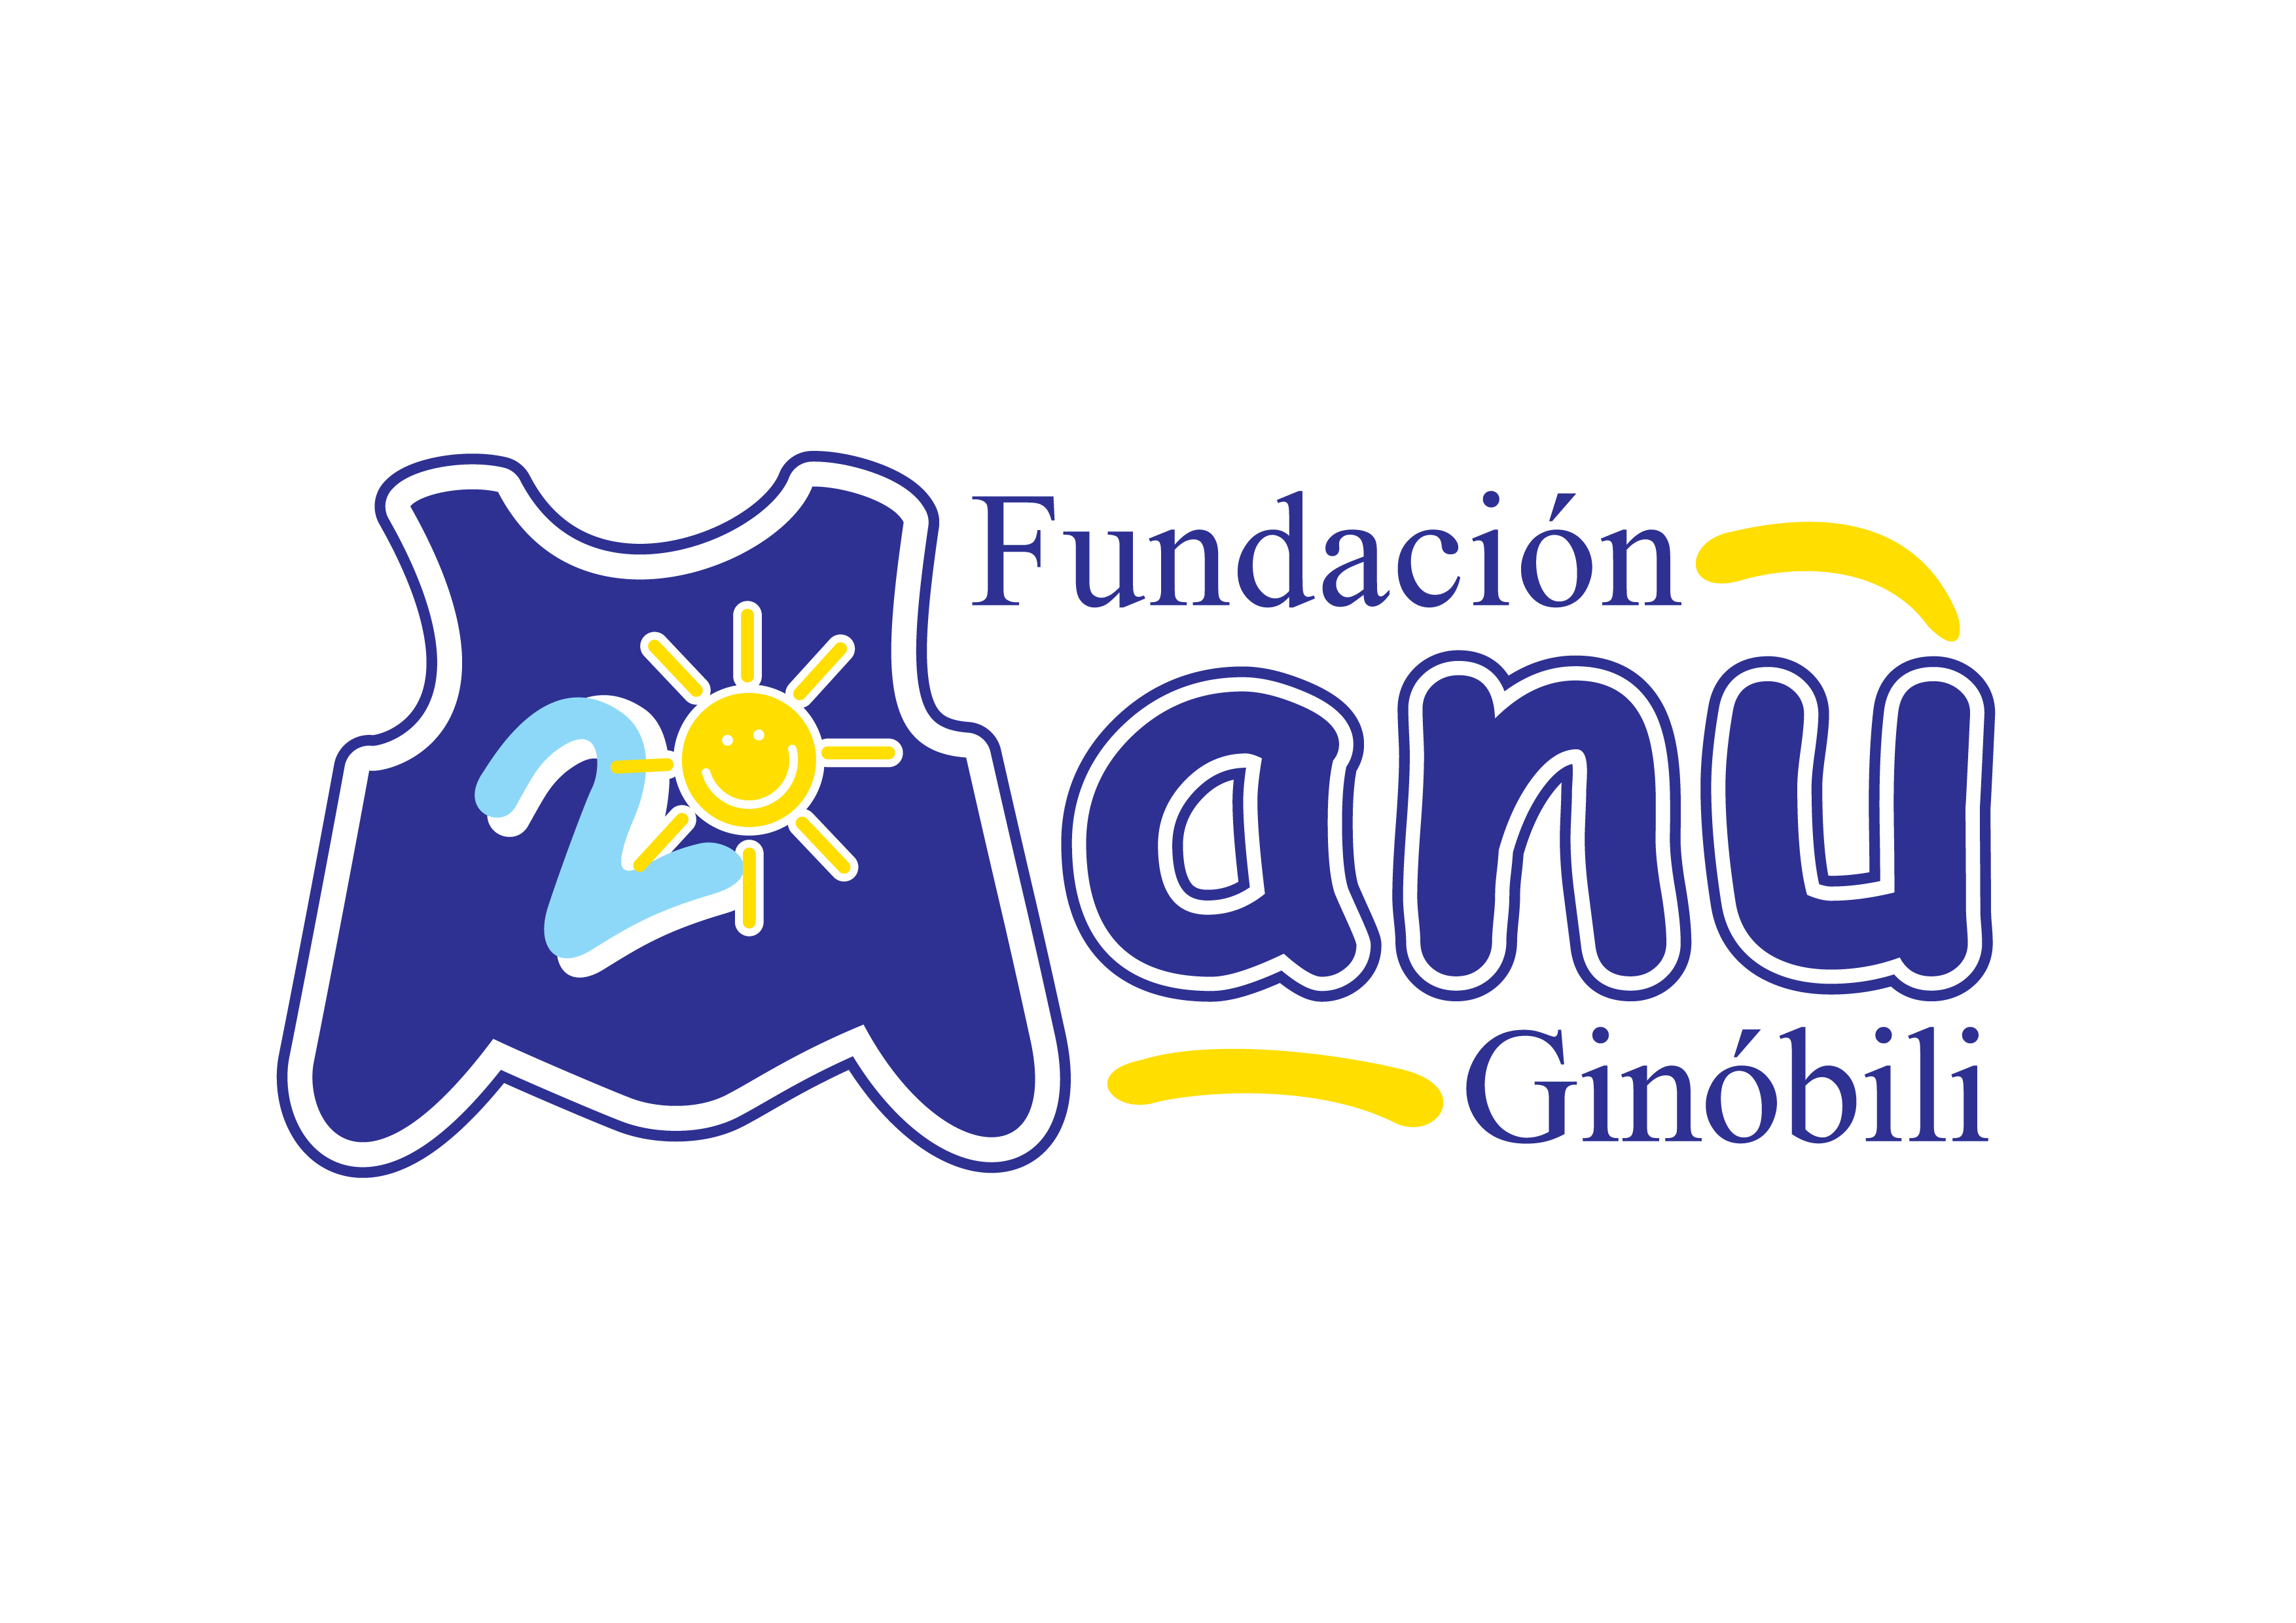 Fundación Manu Ginóbili